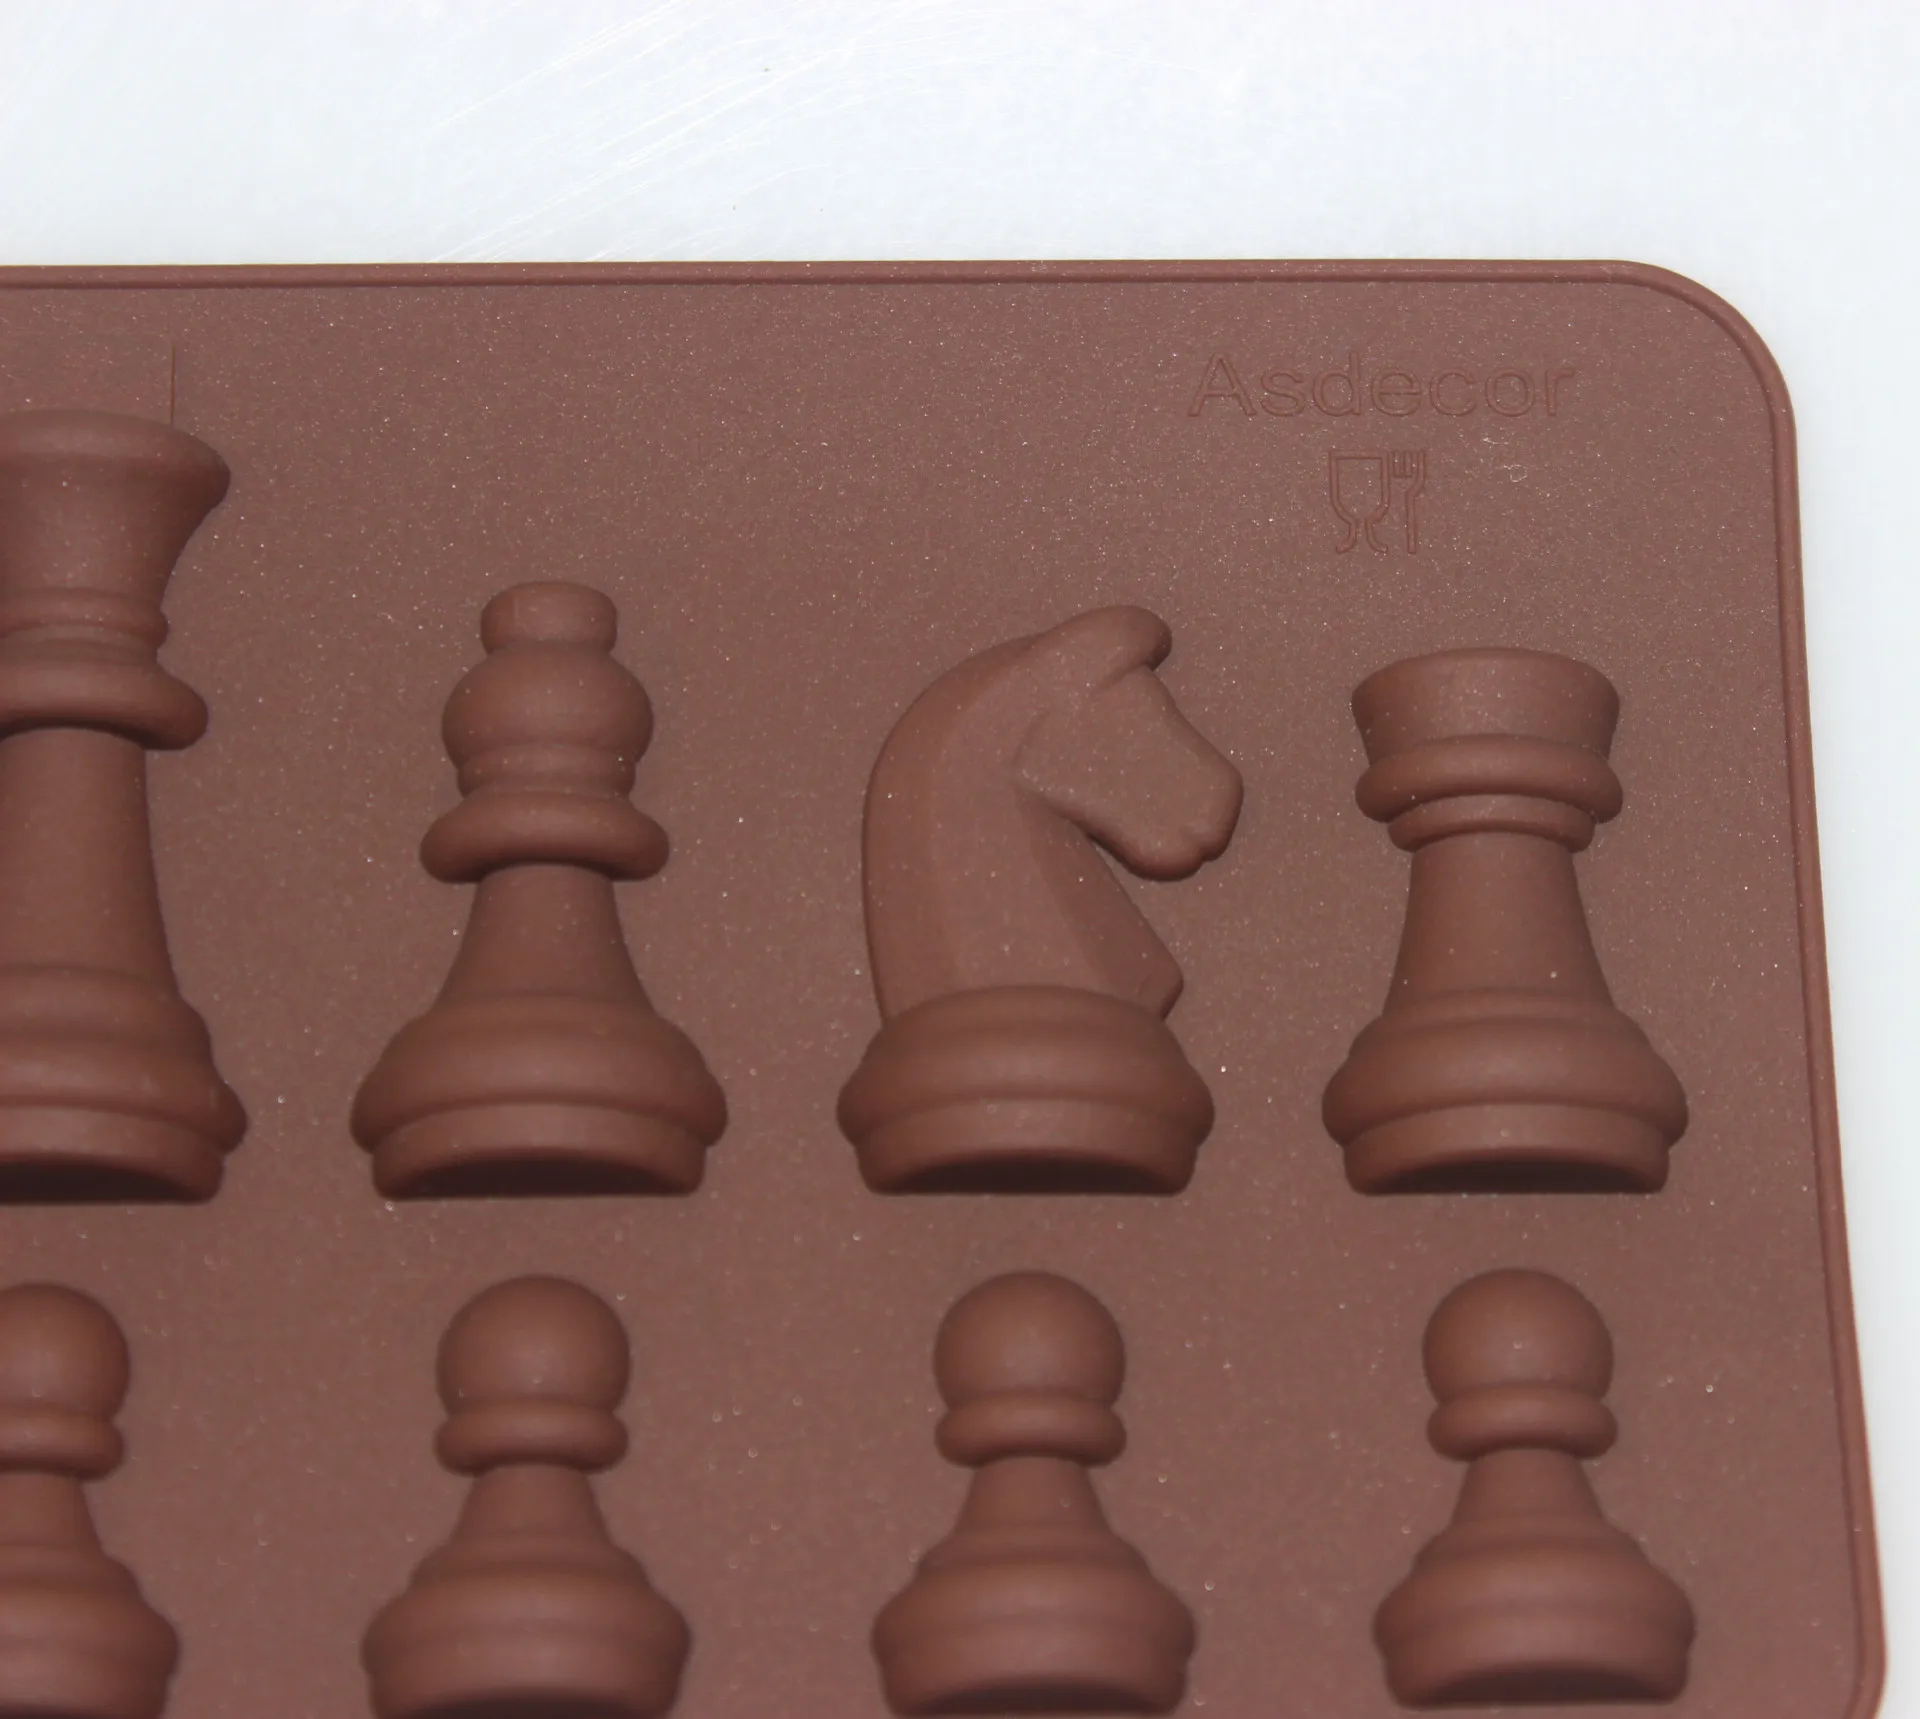 Торт Decoracion ToolsInternational в форме шахмат форма для охлаждения шоколада сахарное Мыло Форма силиконовая форма для кубиков лоток